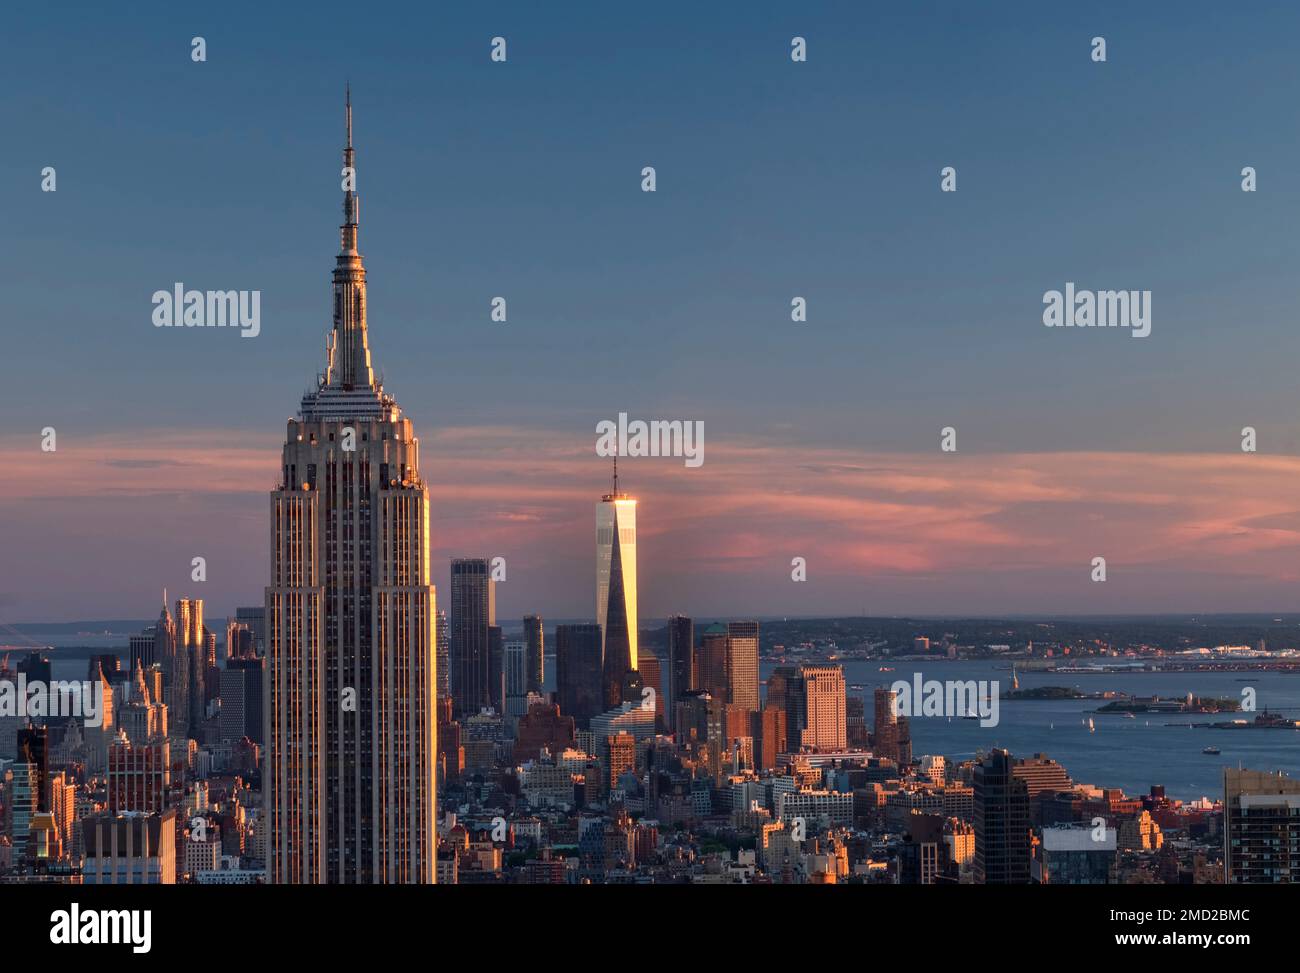 Lo skyline di Manhattan, l'Empire State Building, il One World Trade Center e la Statua della libertà al tramonto, New York, USA Foto Stock